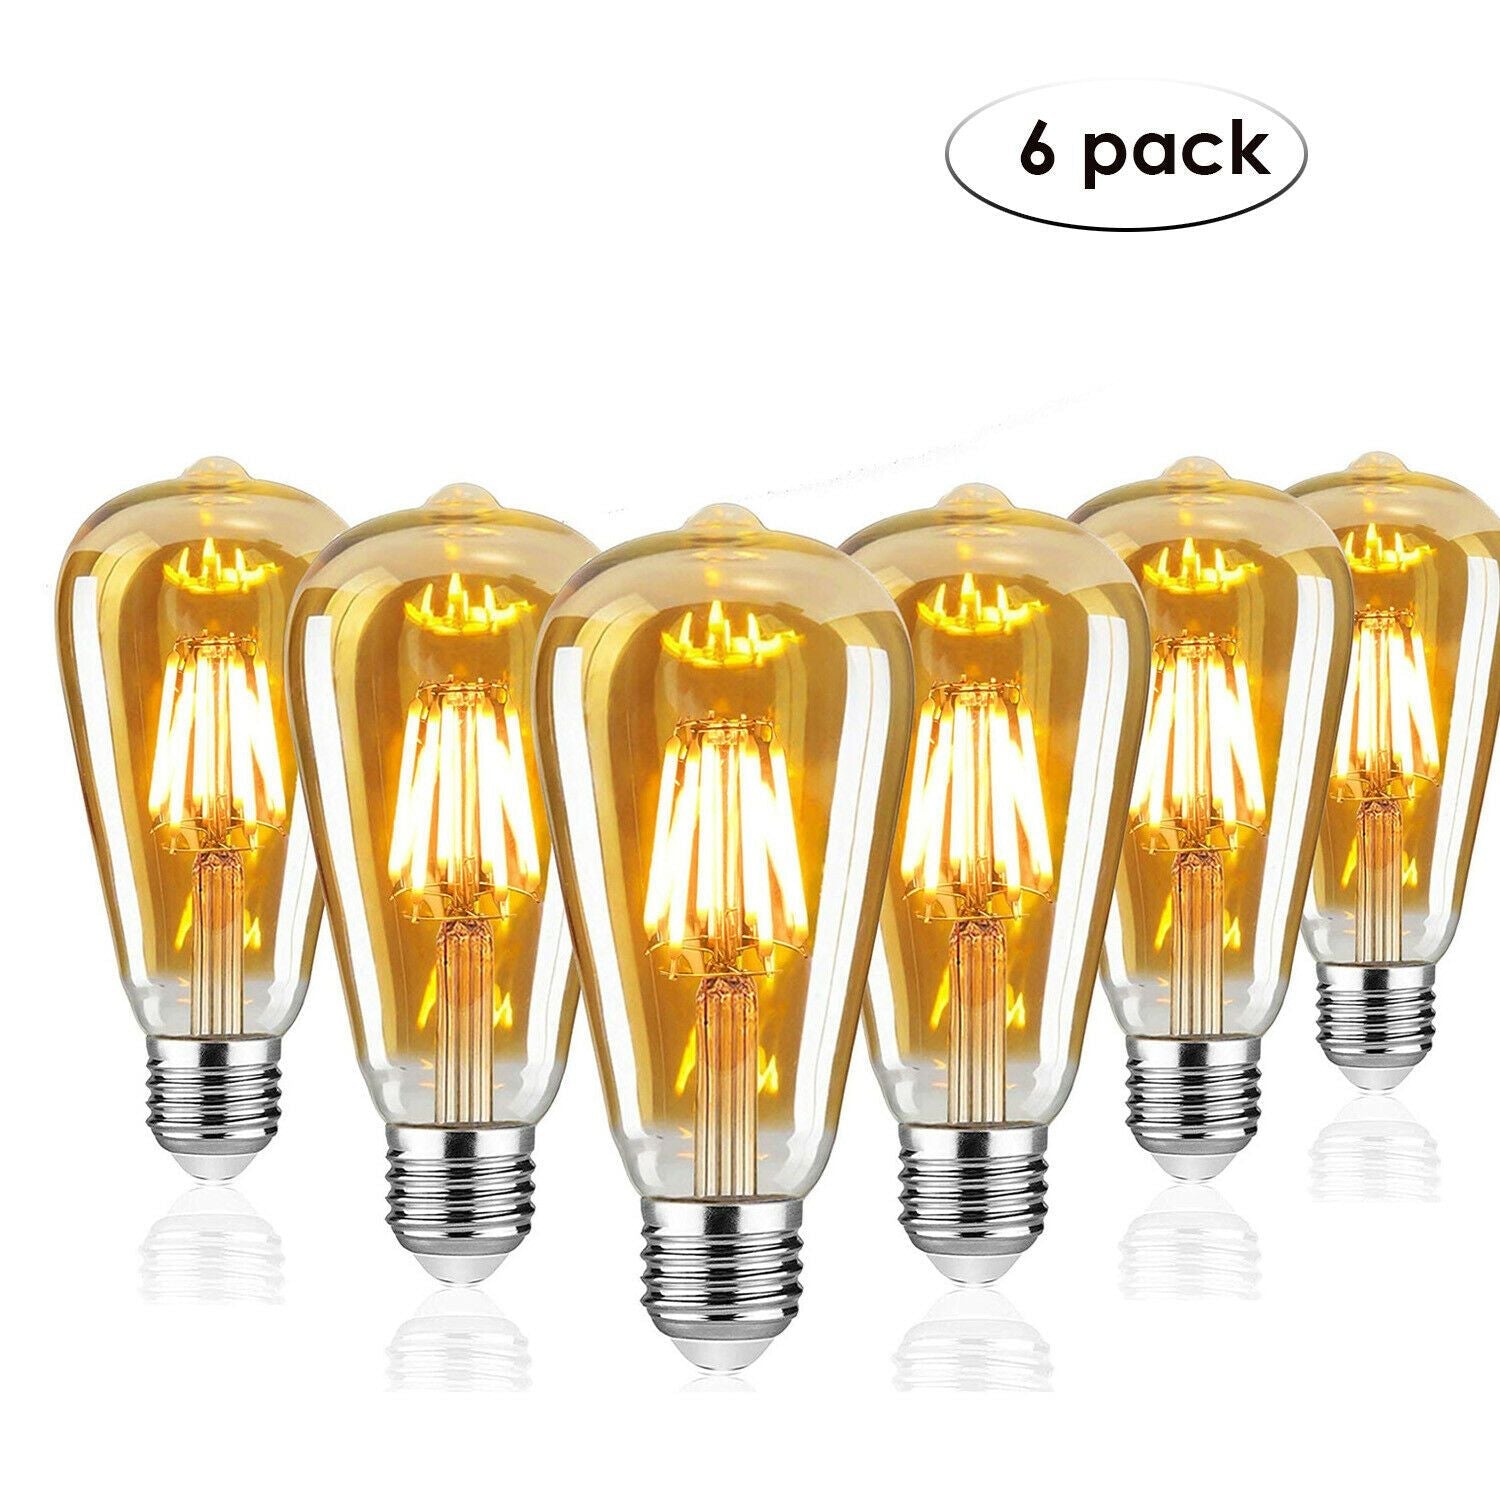 6 Pack E27 Vintage Industrial LED Bulb